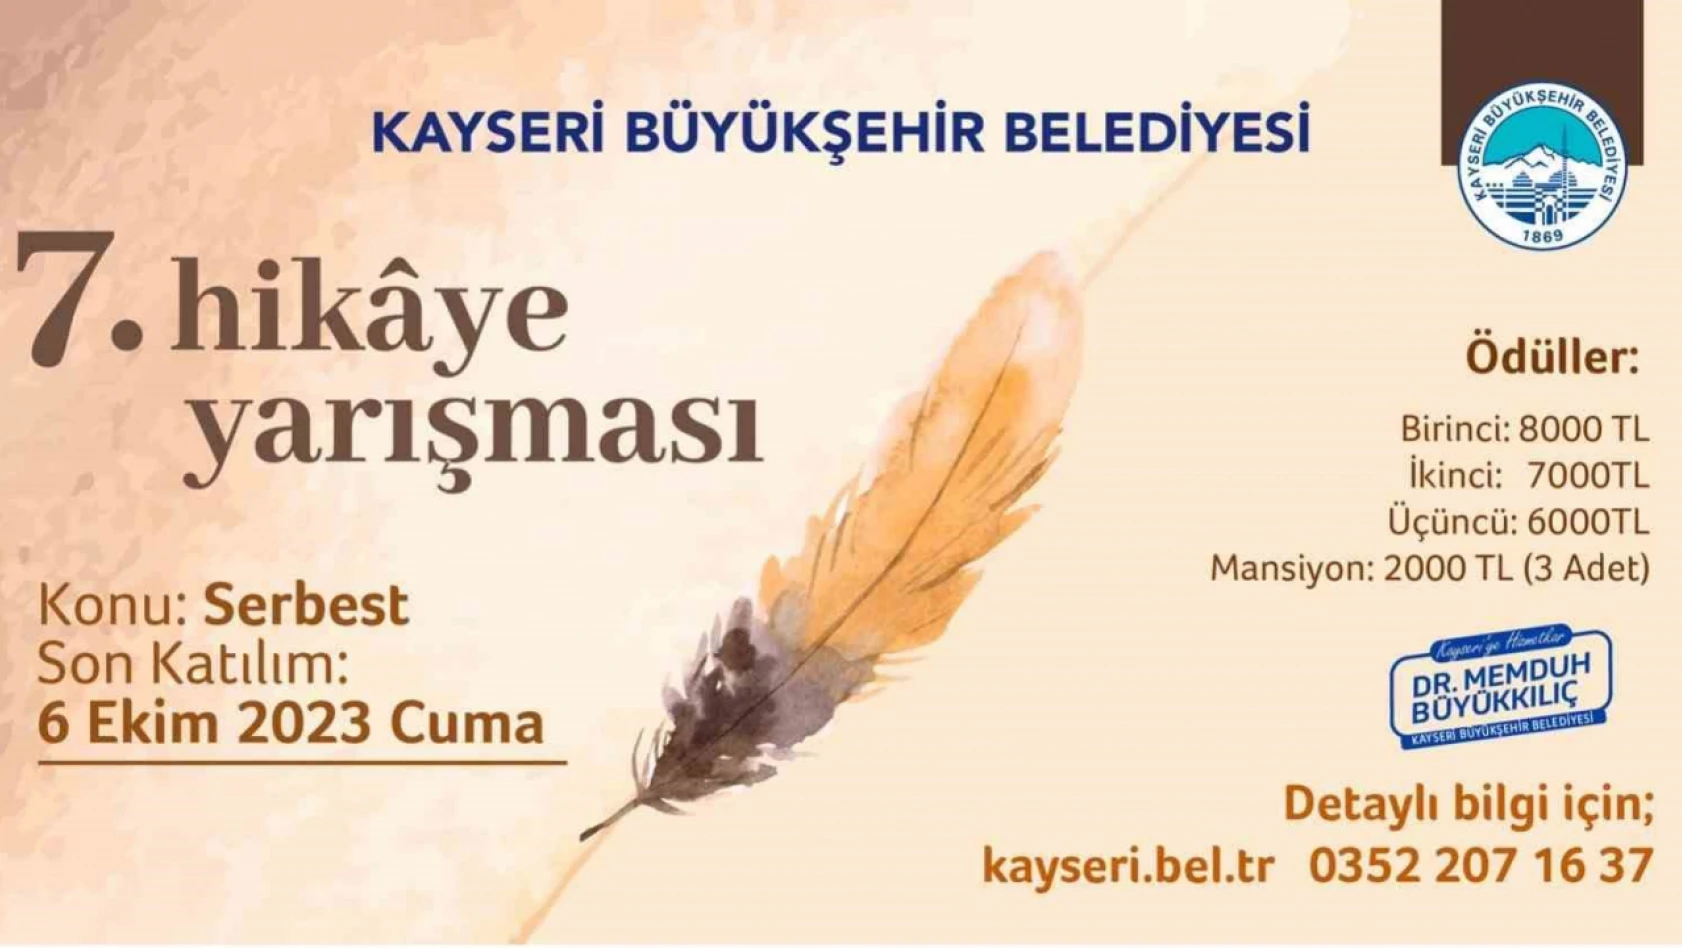 Kayseri'de hikaye yarışmasının 7'ncisi düzenleniyor